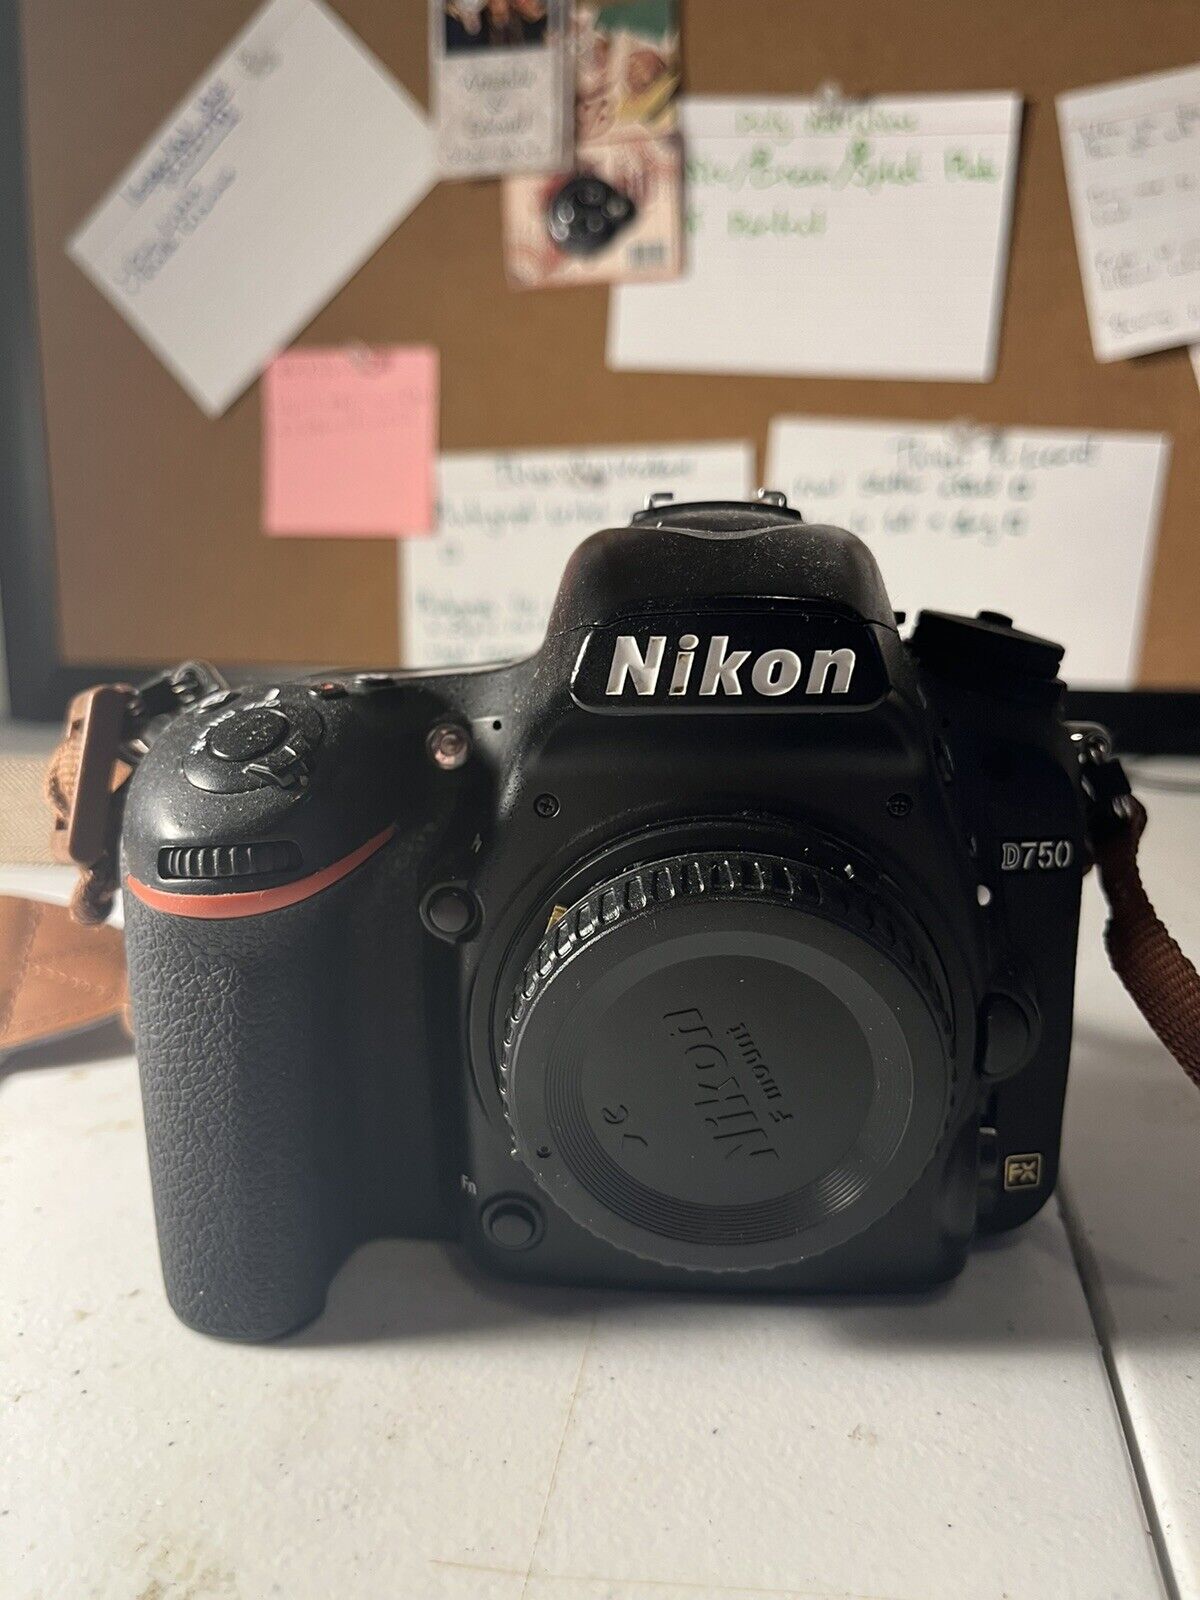 Nikon D750 24.3 MP Full Frame Digital SLR Camera - Black (Body Only)